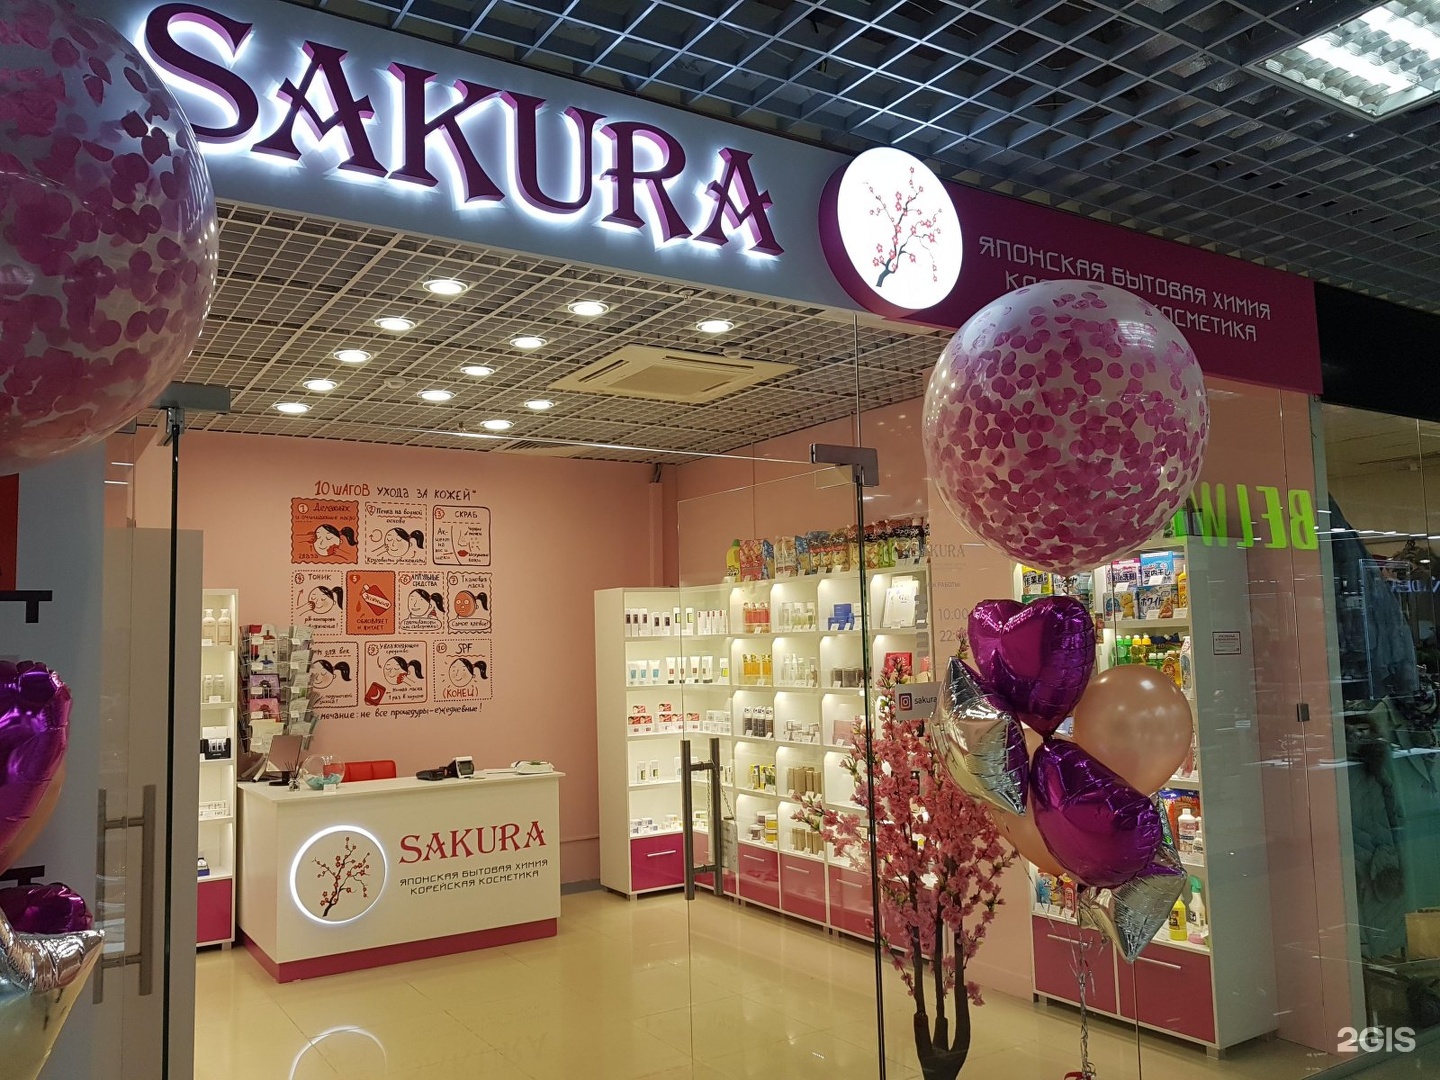 Сакура пермь моторы. Магазин японской косметики. Sakura магазин. Сакура магазин японской косметики. Название магазина косметики.